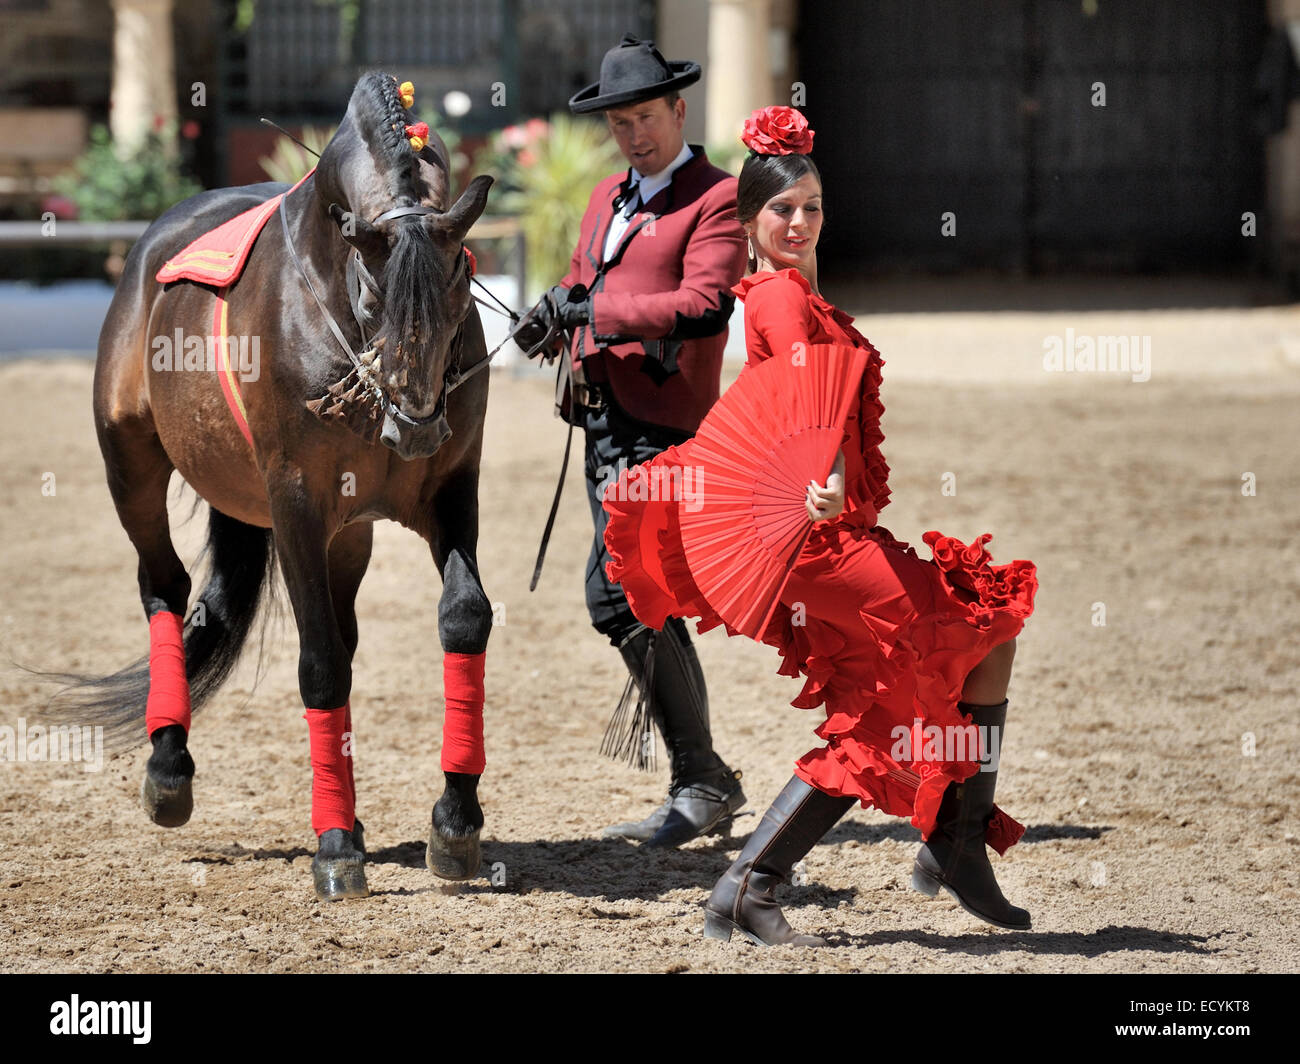 Spettacolo equestre a Scuderie Reali (Caballerizas Reales), Cordoba, Spagna Foto Stock